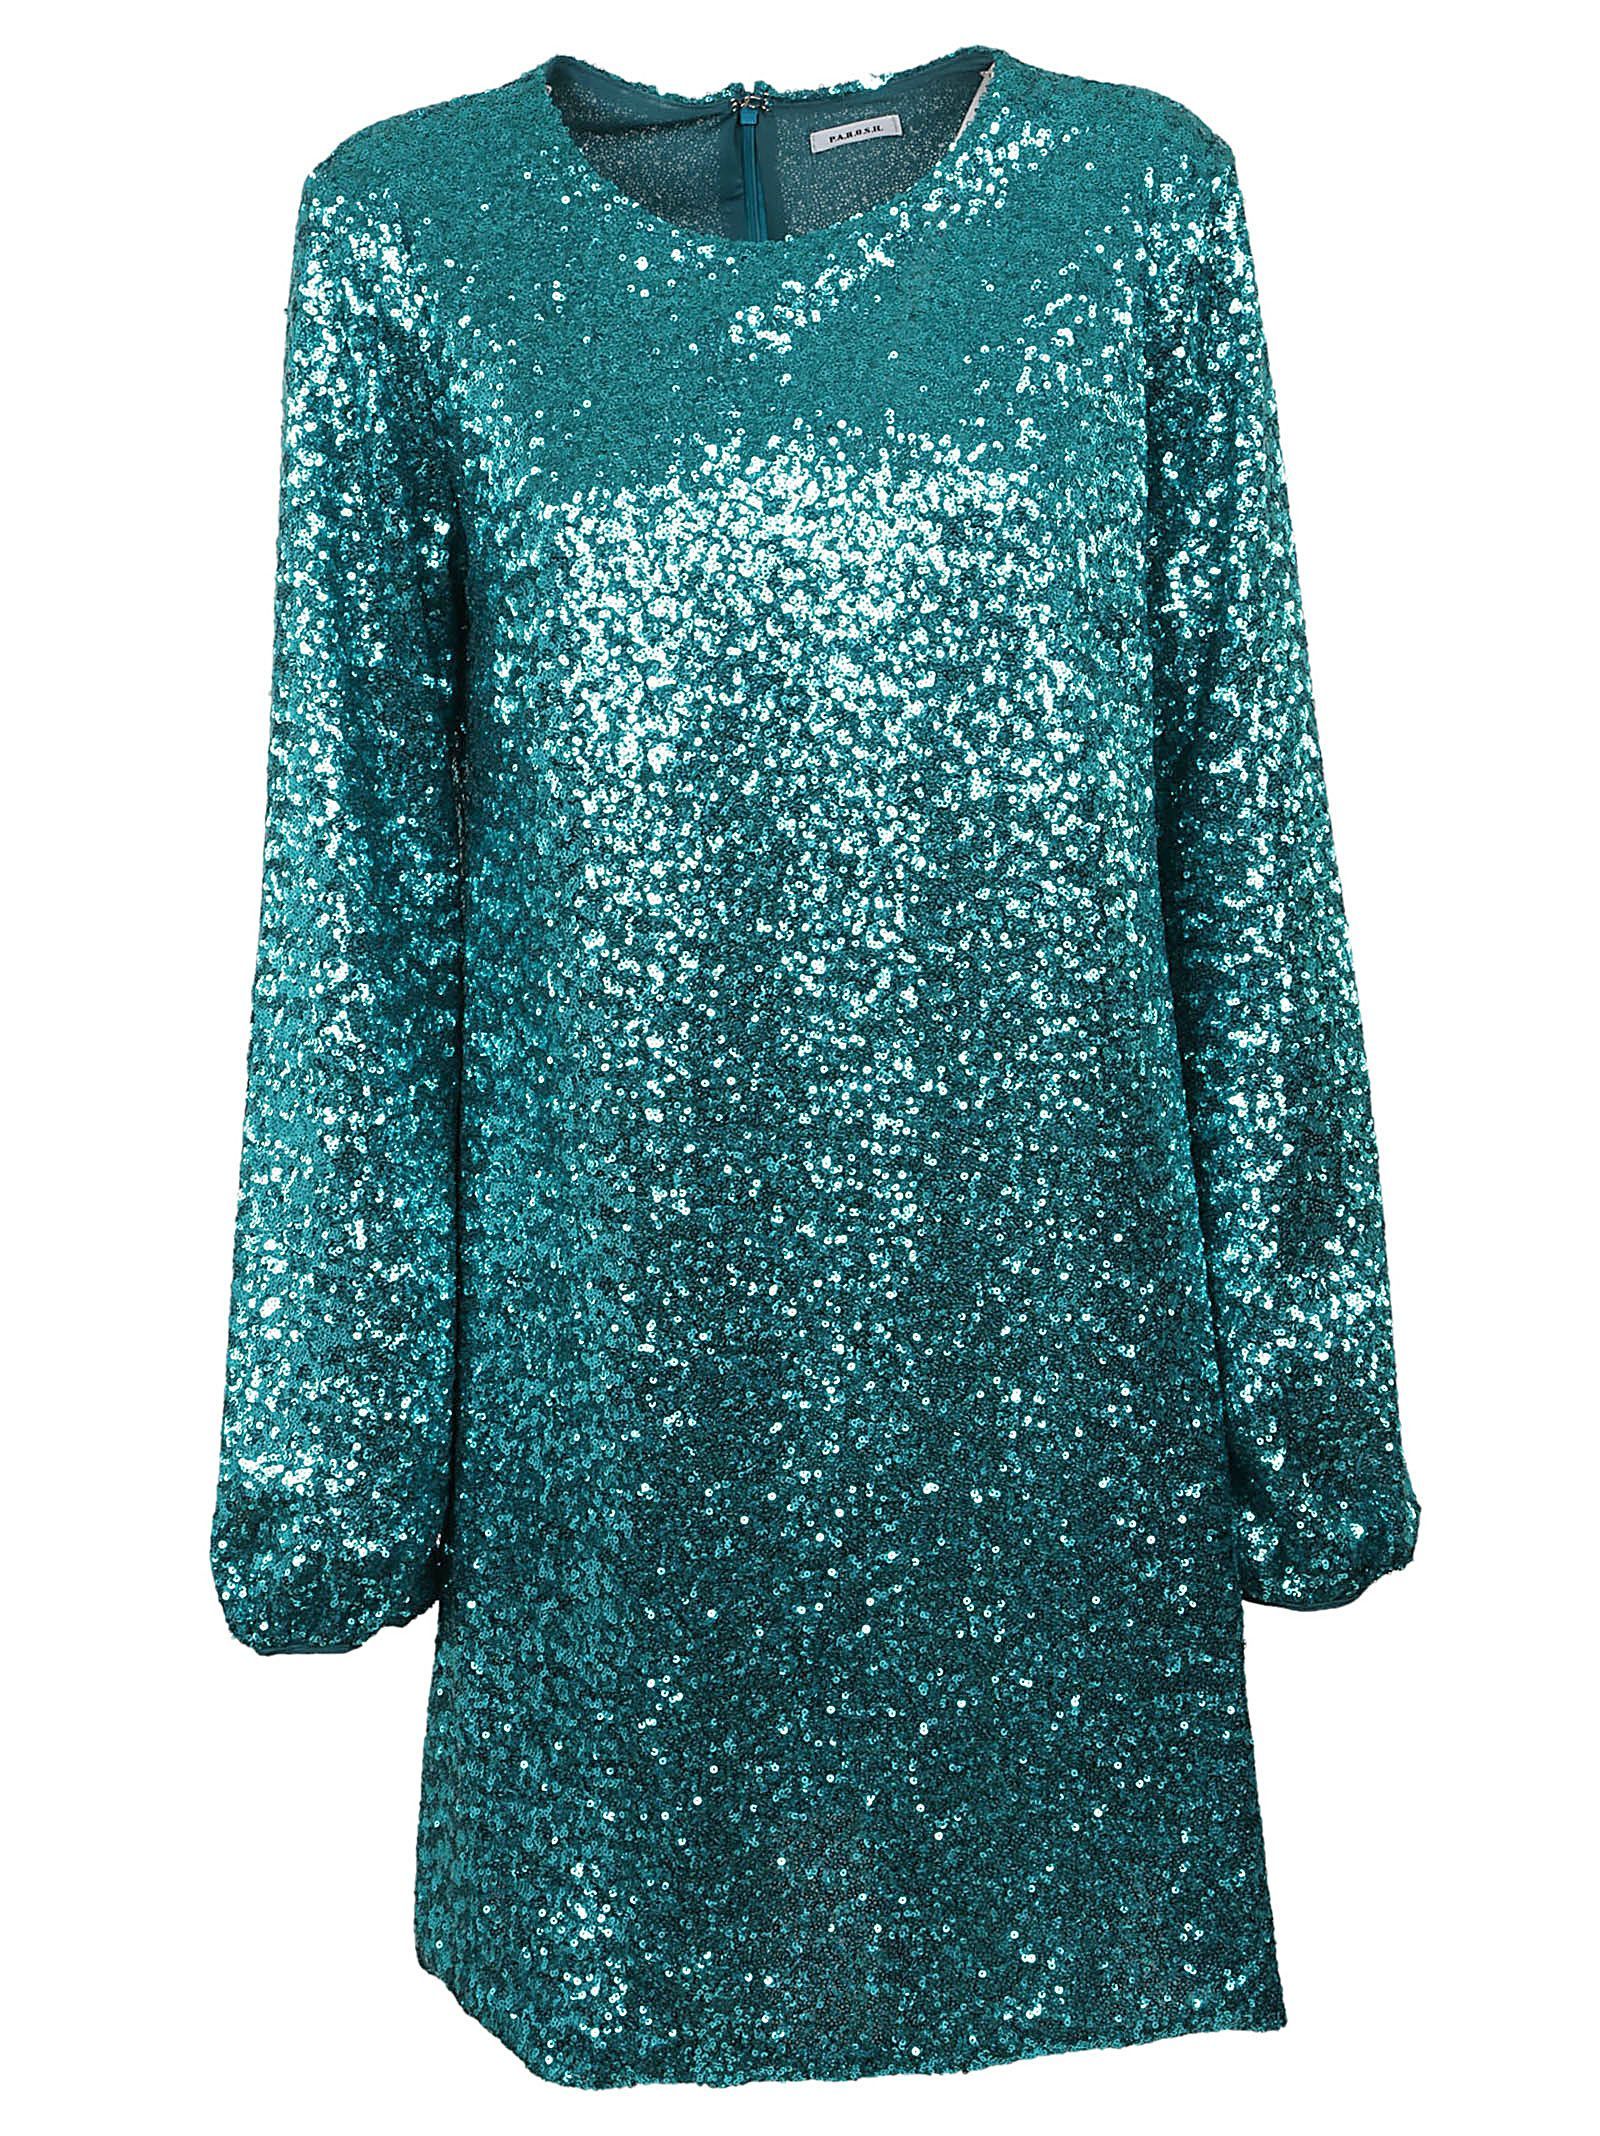 Parosh Sequin Flared Dress | Italist.com US